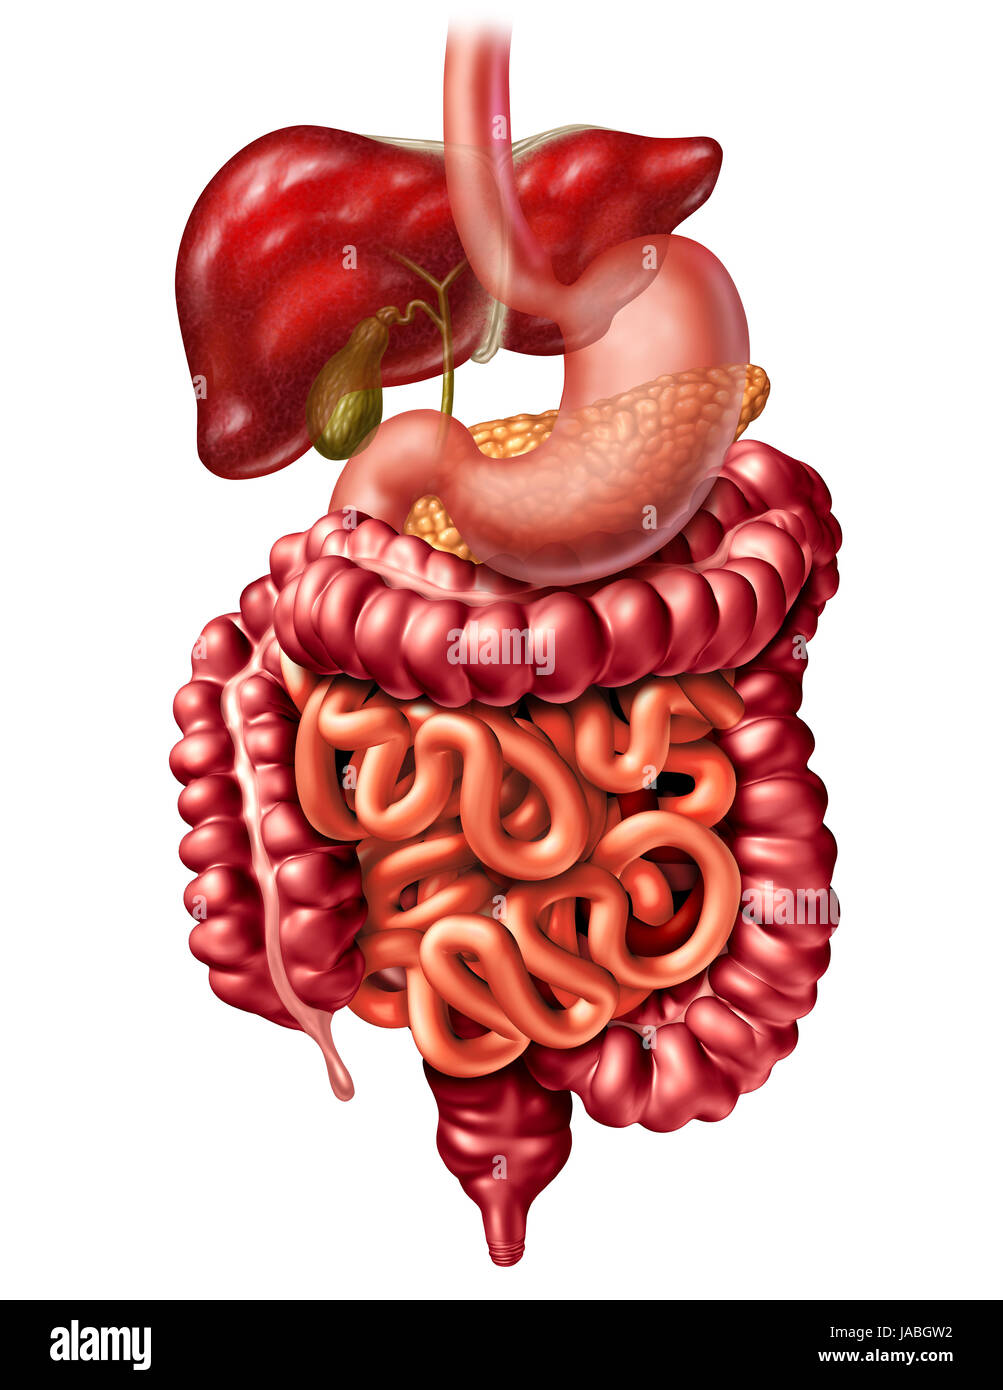 Anatomie du système digestif humain concept comme un pancréas Foie et vésicule biliaire avec un estomac et gros intestin et l'intestin grêle. Banque D'Images